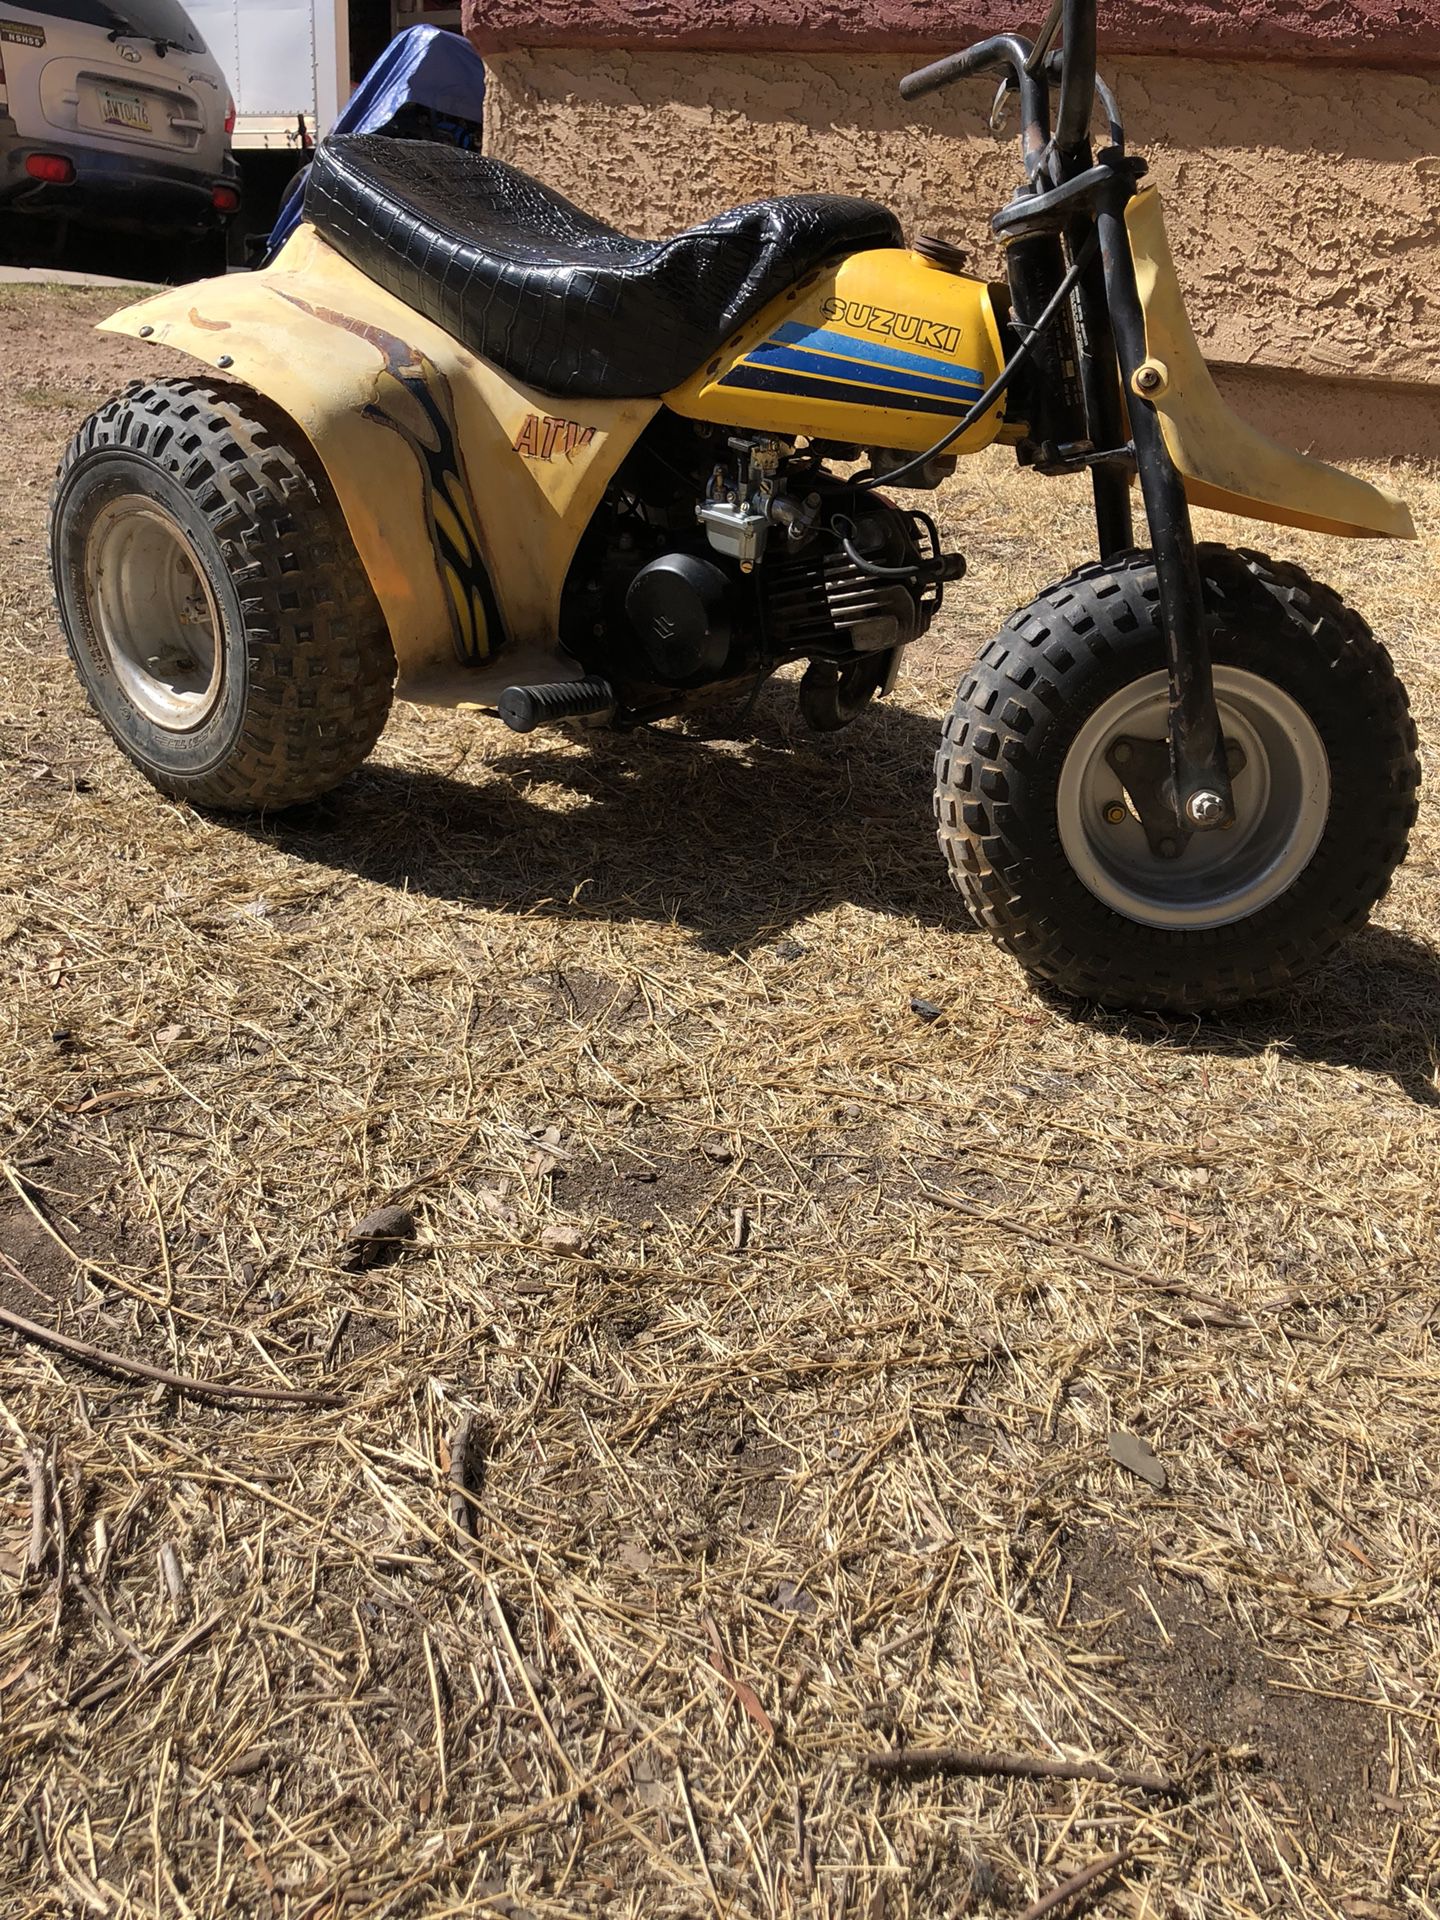 83 Suzuki 50cc trail buddy for Sale in Mesa, AZ - OfferUp